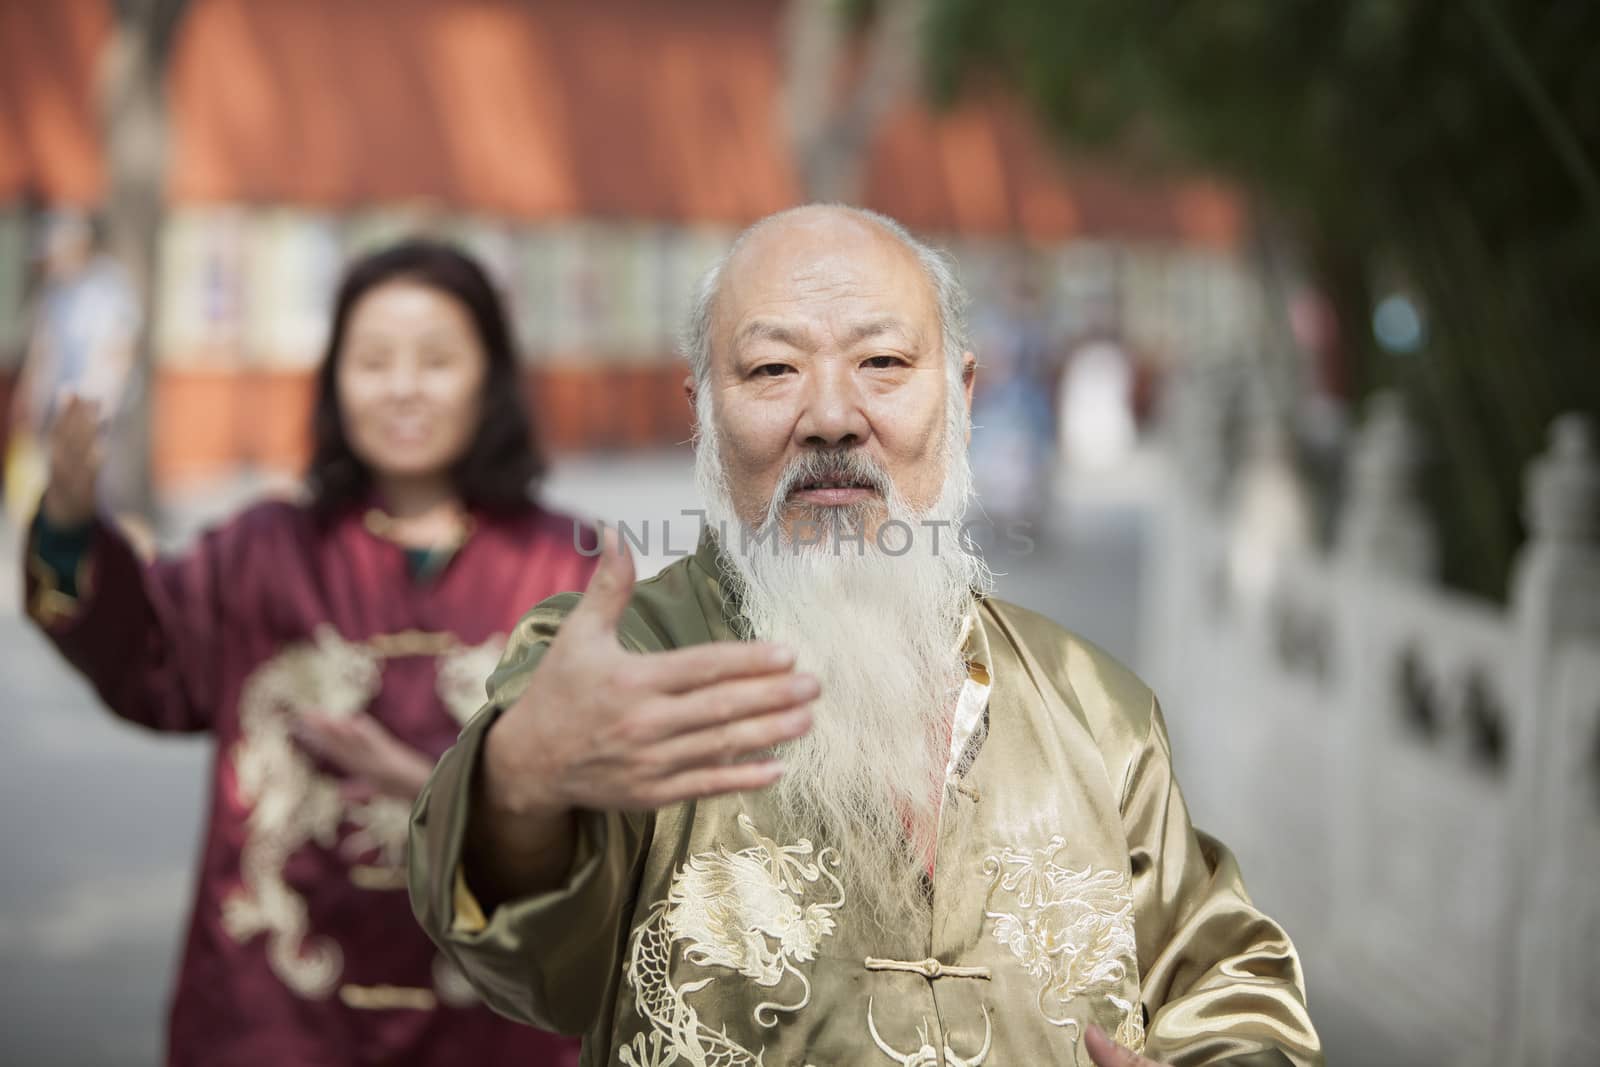 Two Chinese People Practicing Tai Ji